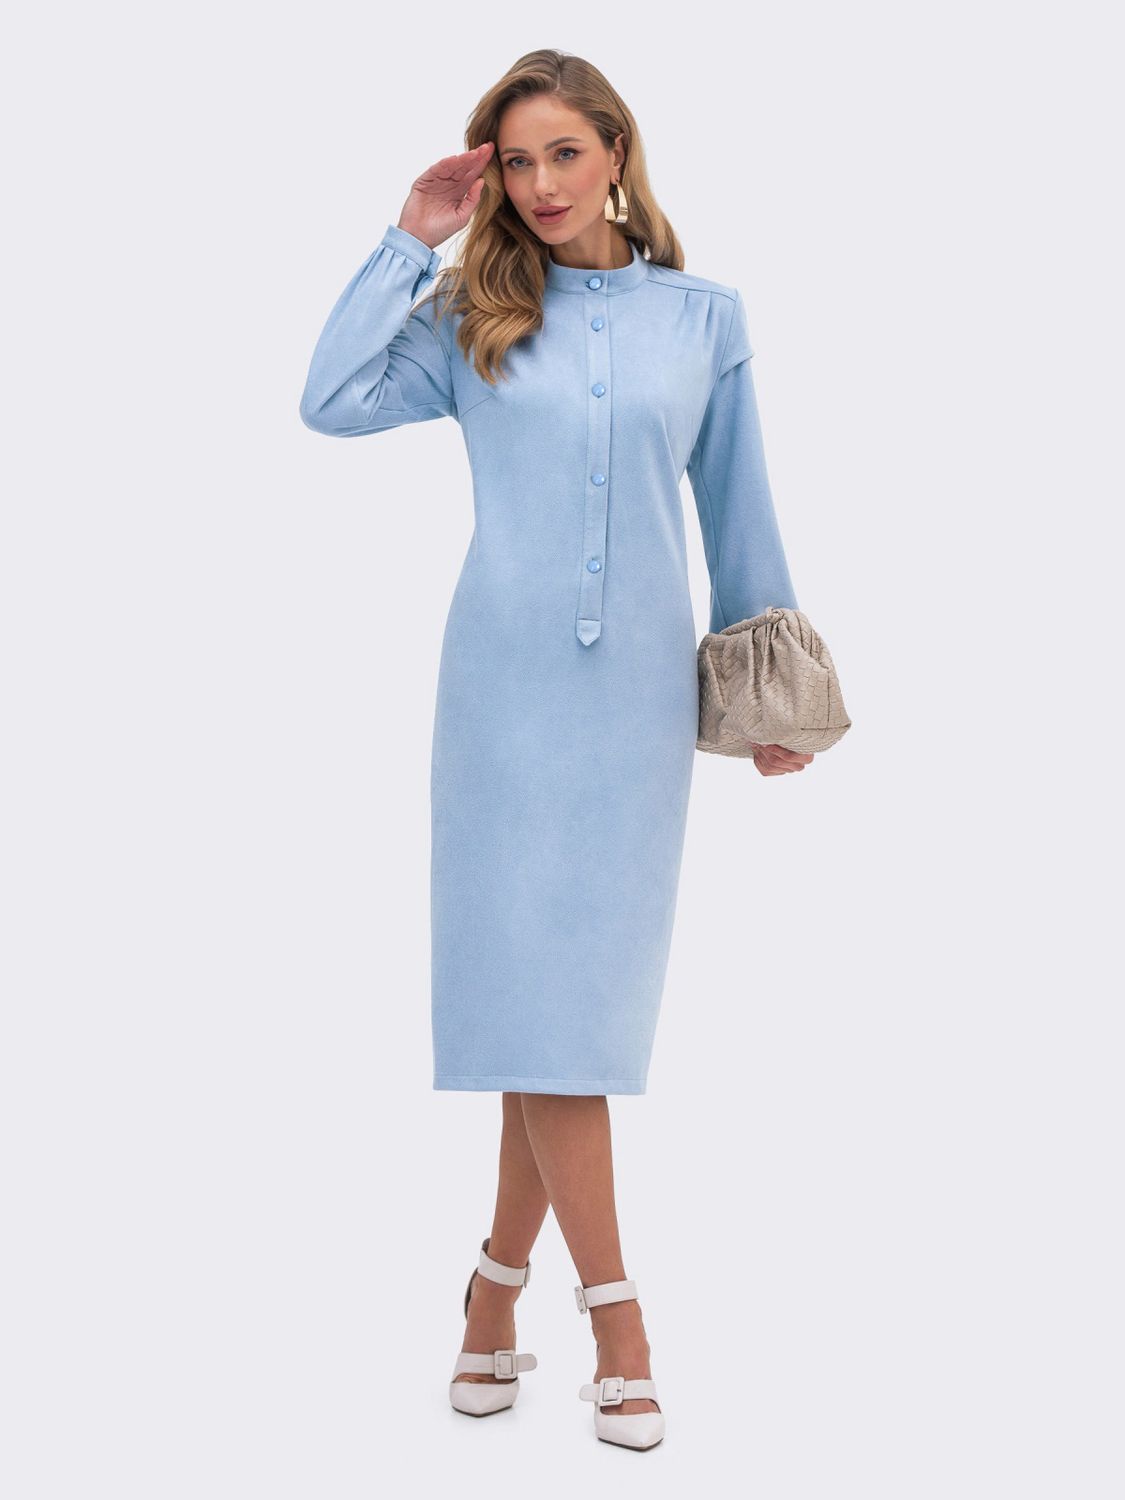 Замшевое платье рубашка в офисном стиле голубое - фото